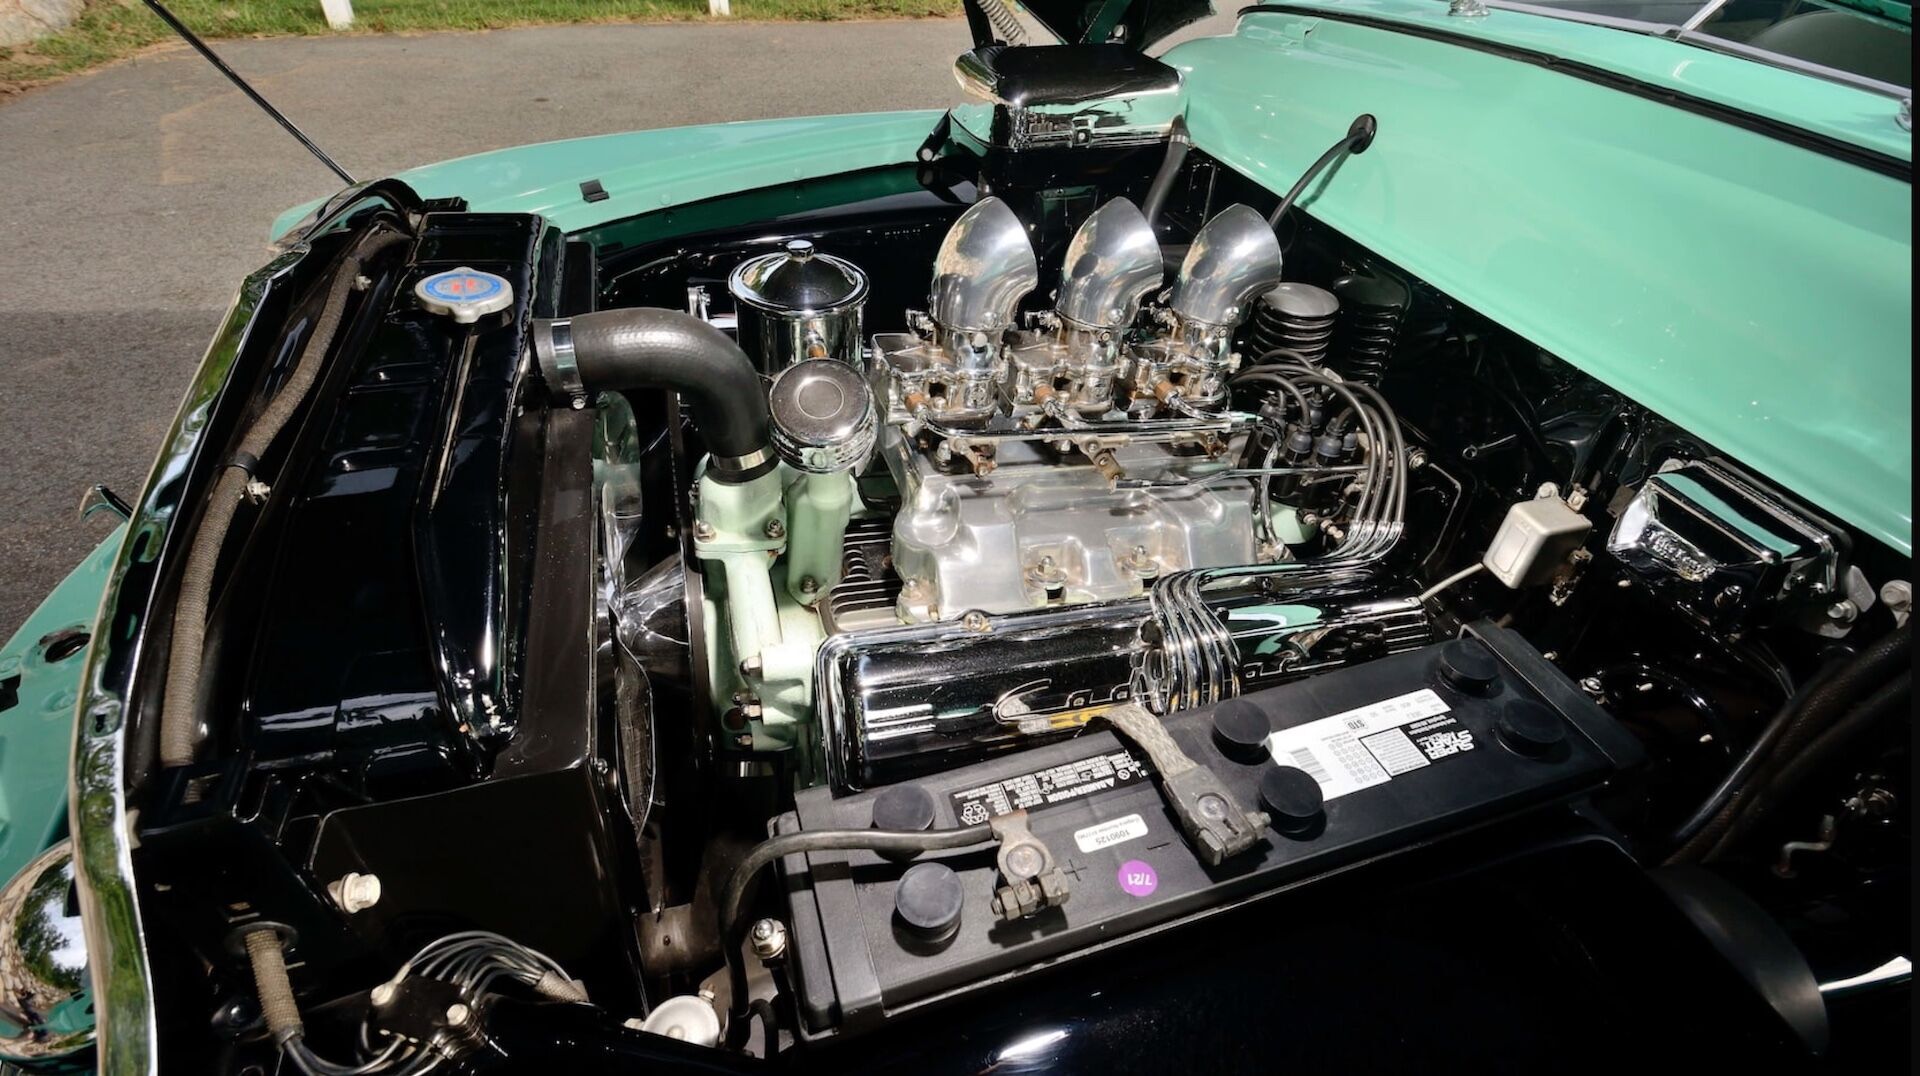 Під капотом розміщено двигун Cadillac V8 з трьома карбюраторами Stromberg